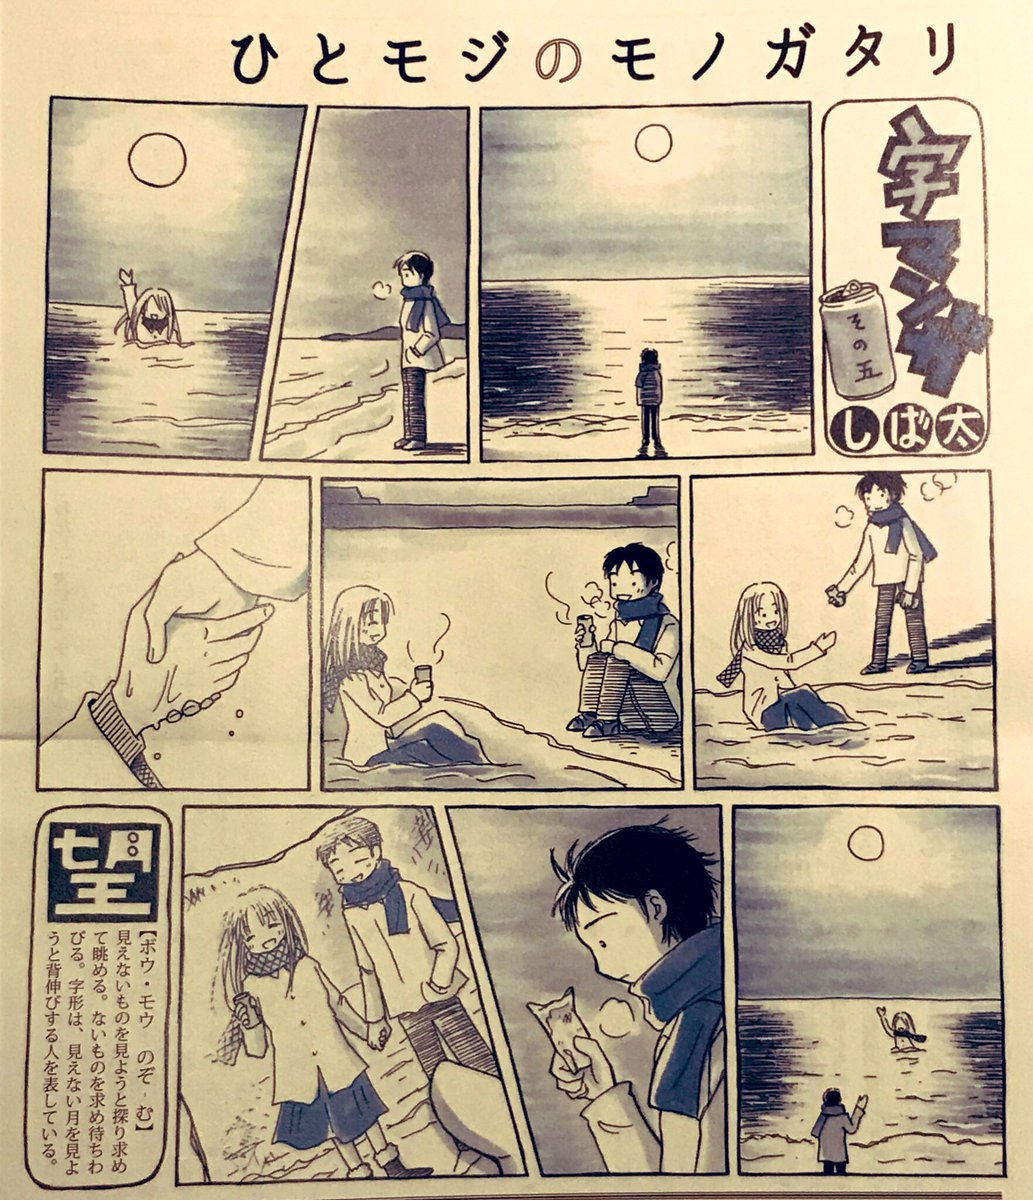 逢いたい人がいる。
ずっと忘れない人がいる。

漢字一文字からイメージしたサイレント漫画です。
 #東日本大地震 